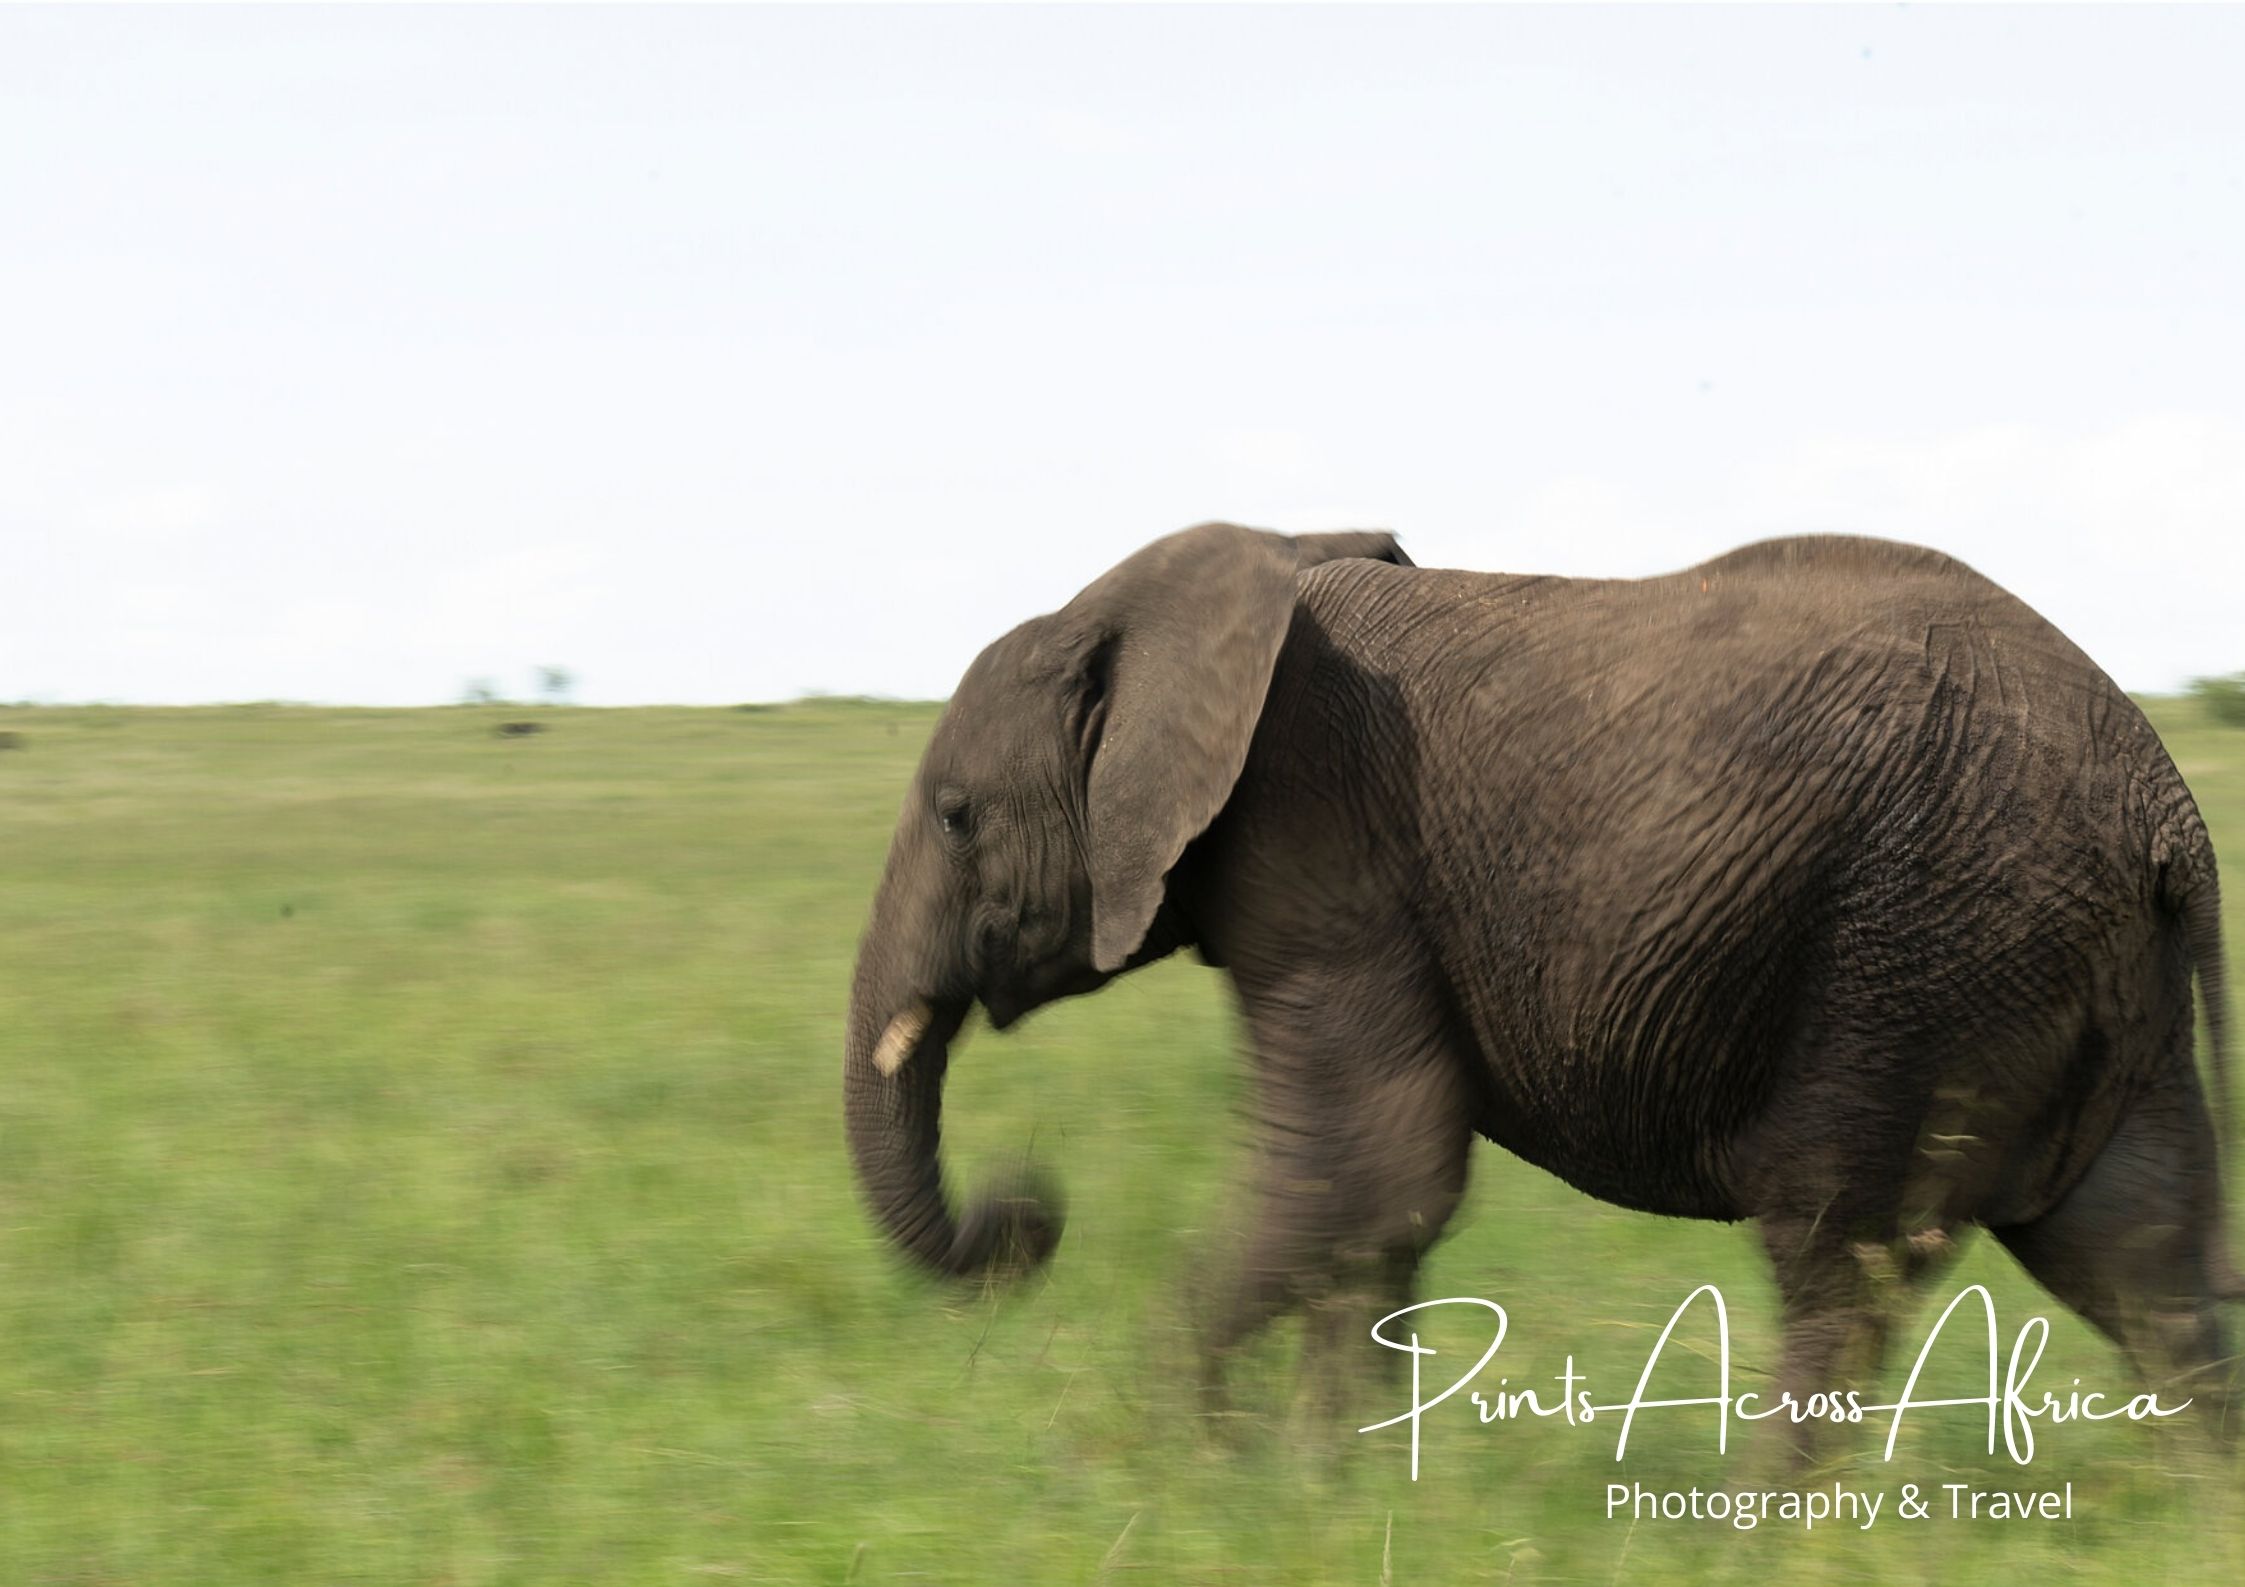 An elephant running